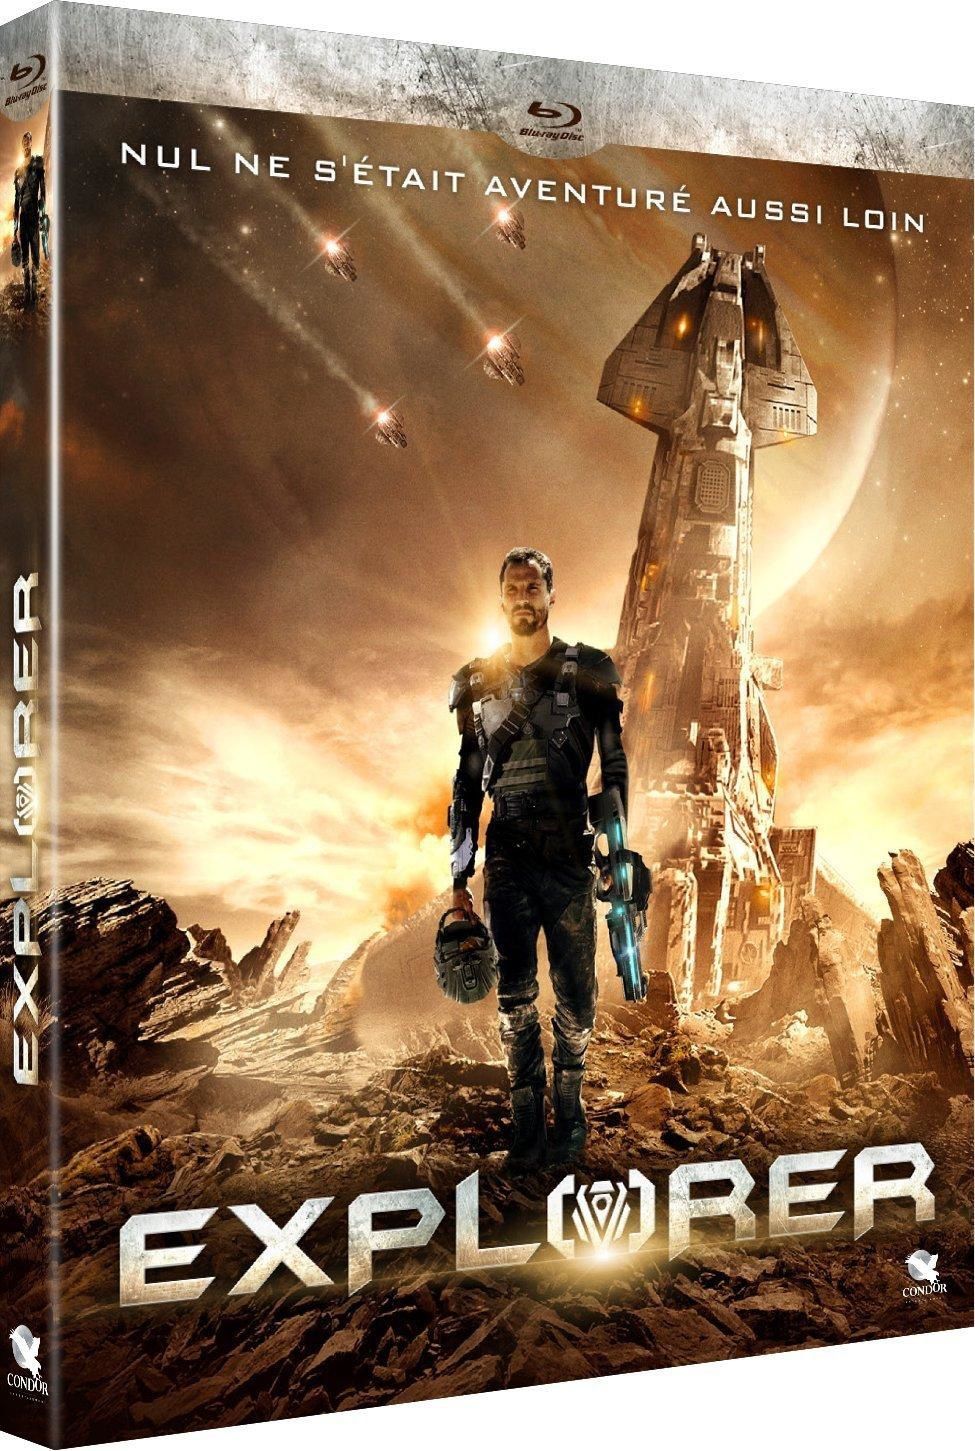 EXPLORER (BANDE ANNONCE VF et VOST) En DVD, Blu-Ray et VOD le 19 août 2016 (Arrowhead)